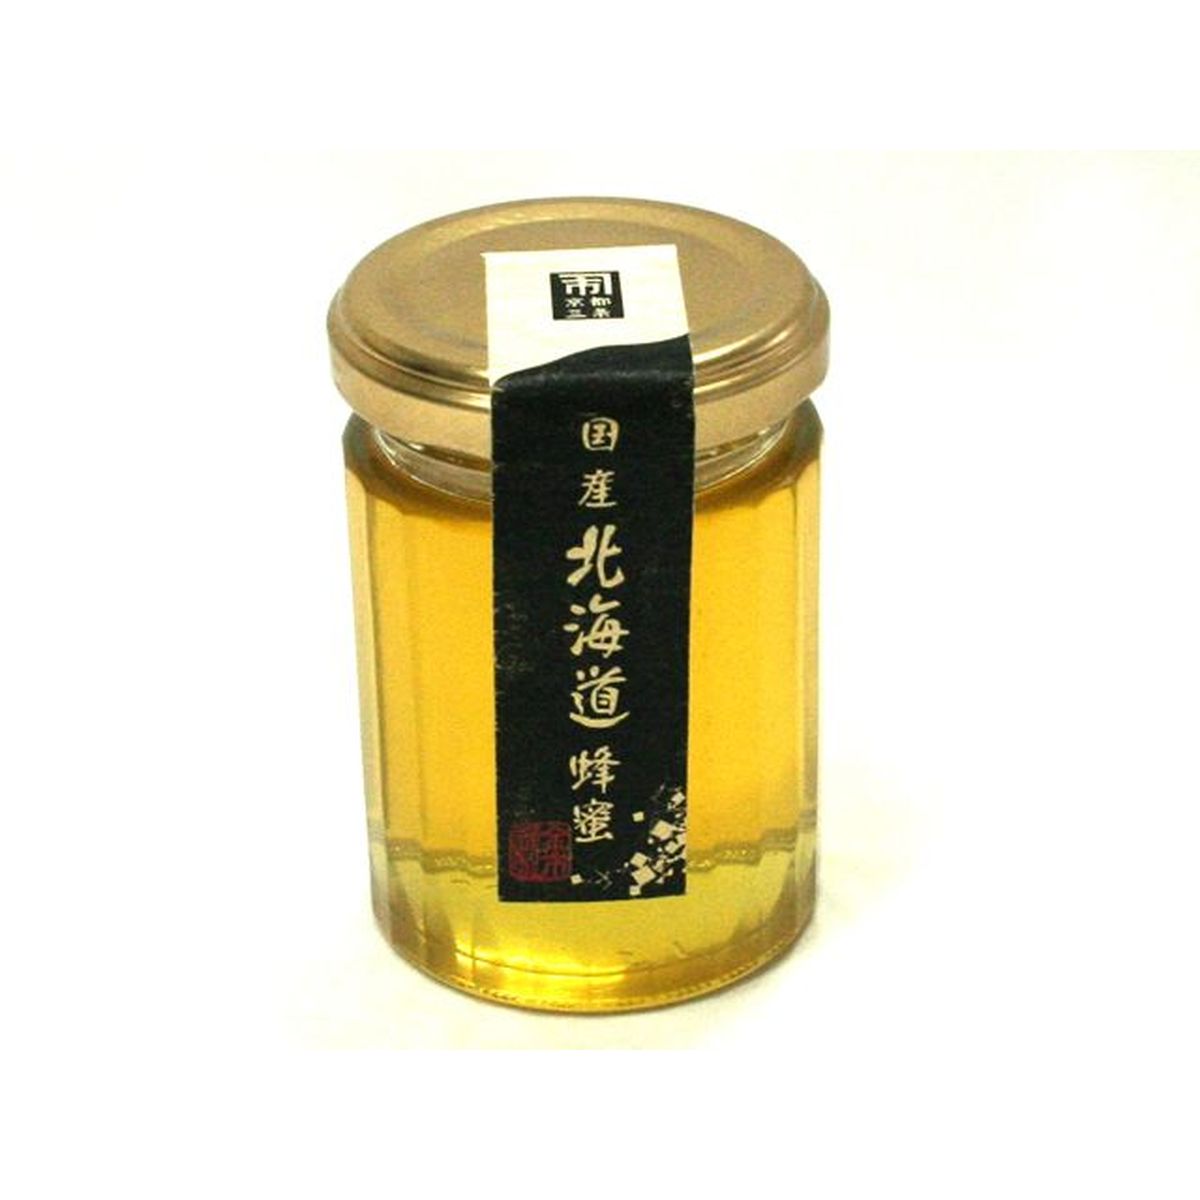 【12個入リ】金市商店 国産 北海道蜂蜜 瓶 130g